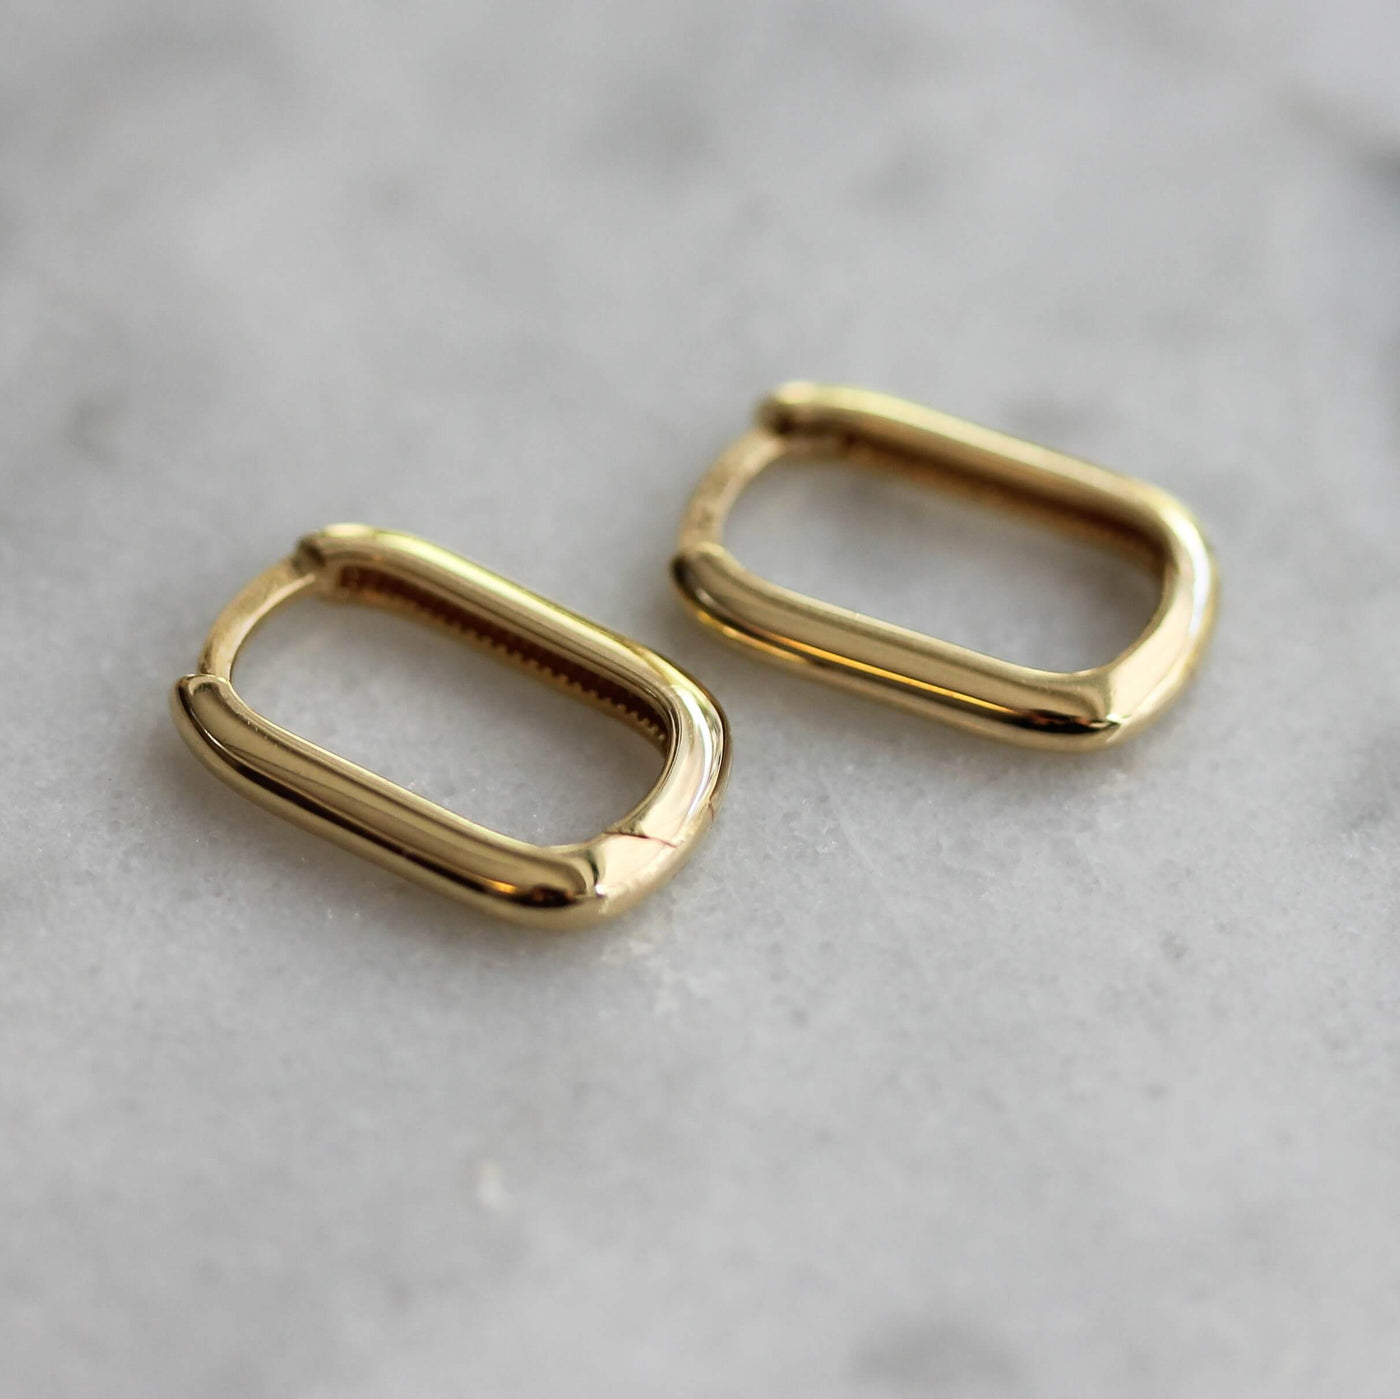 Michelle Earring 14K Gold Earrings 